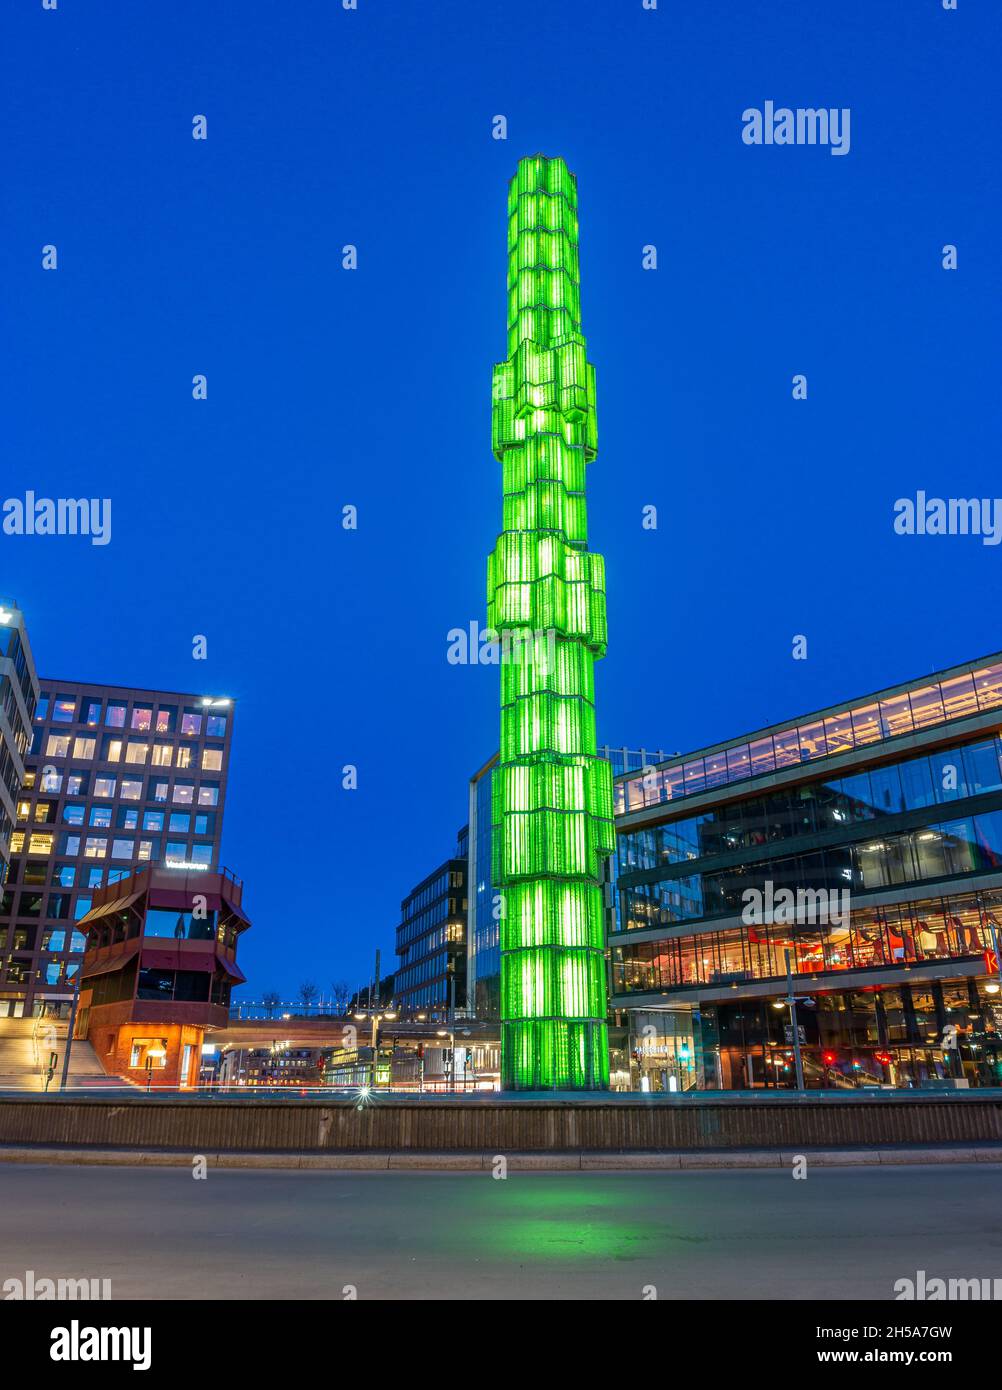 Stoccolma, Svezia - Aprile 10: Torre di vetro illuminata di colore verde in piazza Sergel nel centro Foto Stock